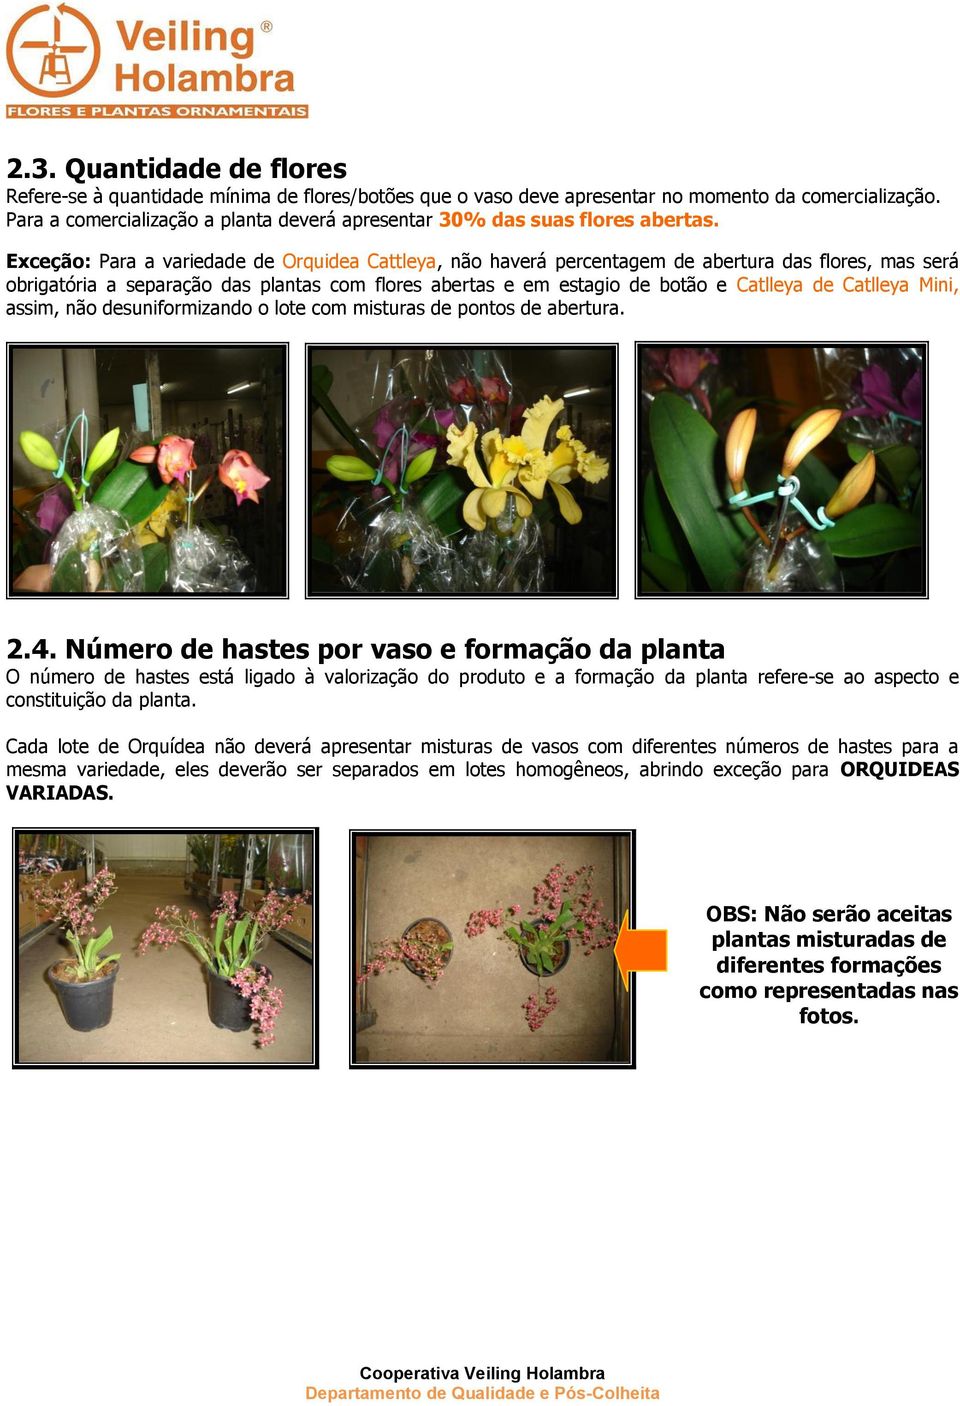 Exceção: Para a variedade de Orquidea Cattleya, não haverá percentagem de abertura das flores, mas será obrigatória a separação das plantas com flores abertas e em estagio de botão e Catlleya de